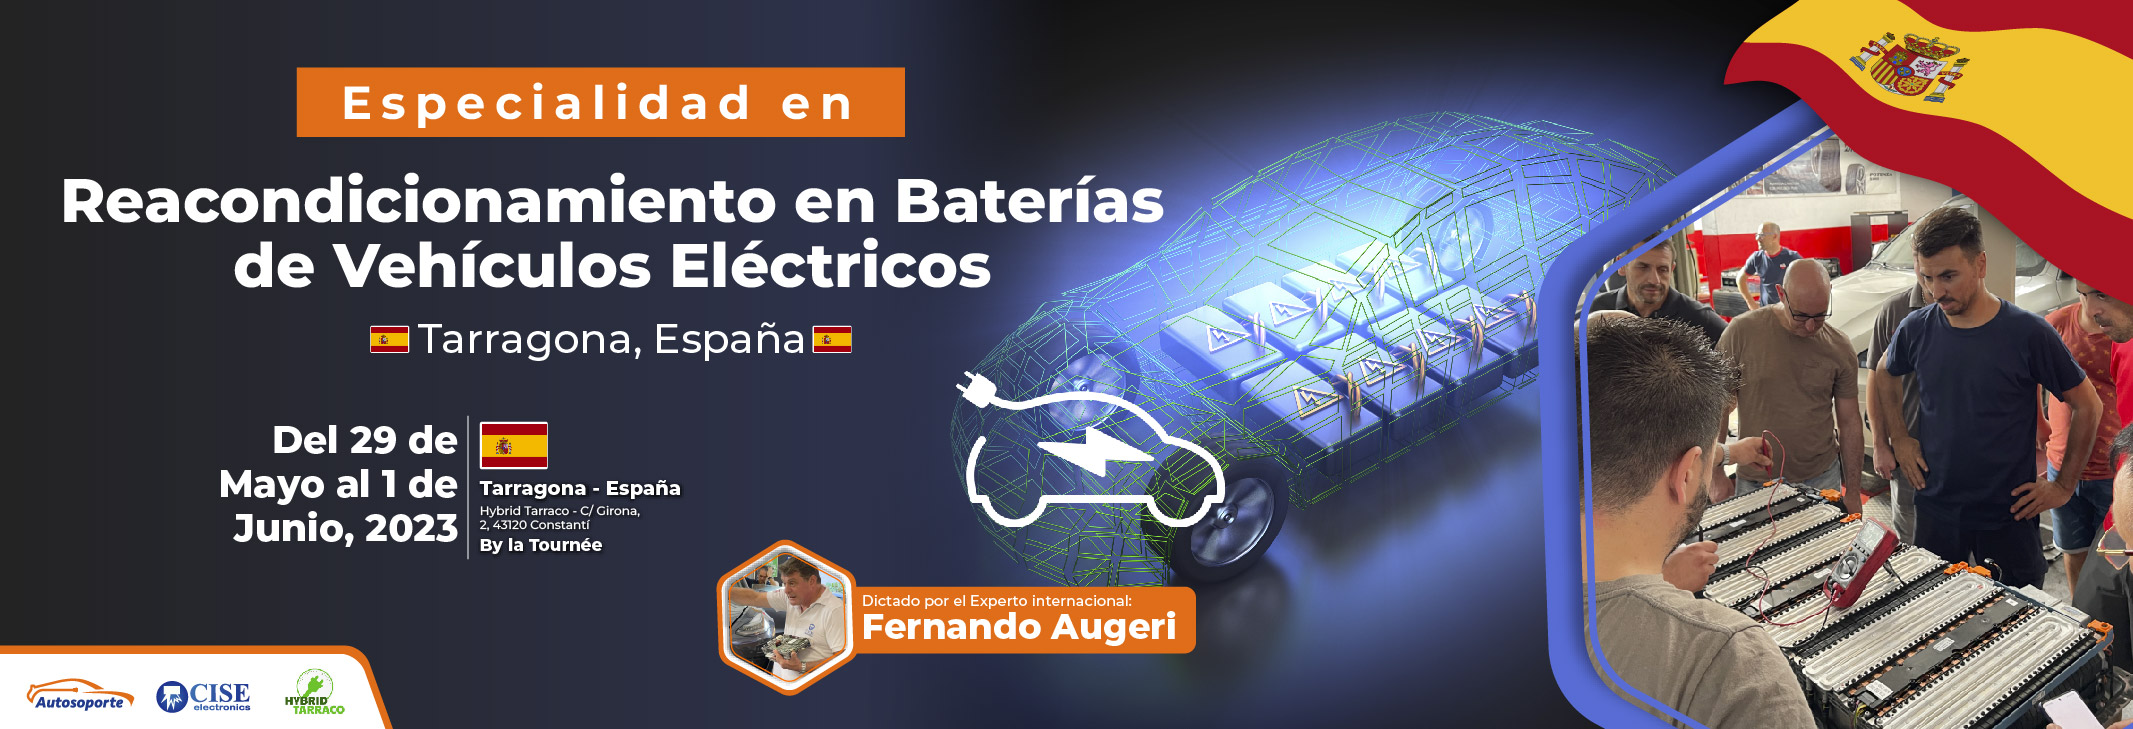 reacondicionamiento de baterias de vehiculos electricos